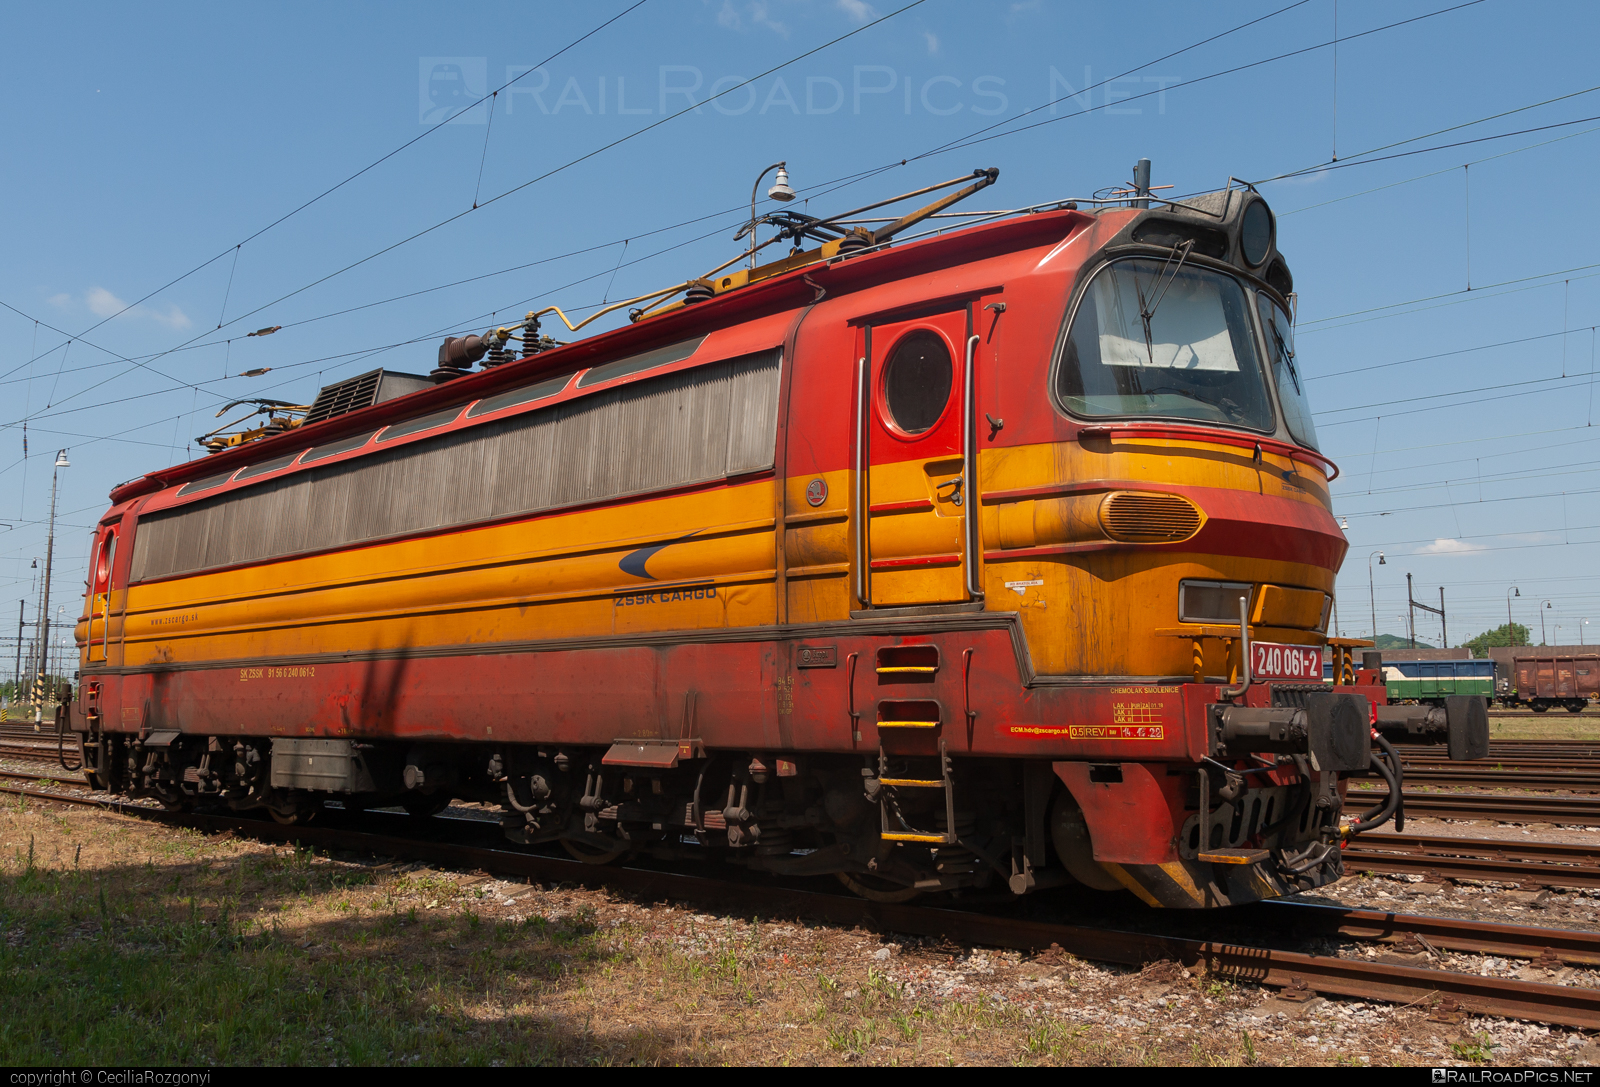 Škoda 47E - 240 061-2 operated by Železničná Spoločnost' Cargo Slovakia a.s. #ZeleznicnaSpolocnostCargoSlovakia #laminatka #locomotive240 #skoda #skoda47e #zsskcargo